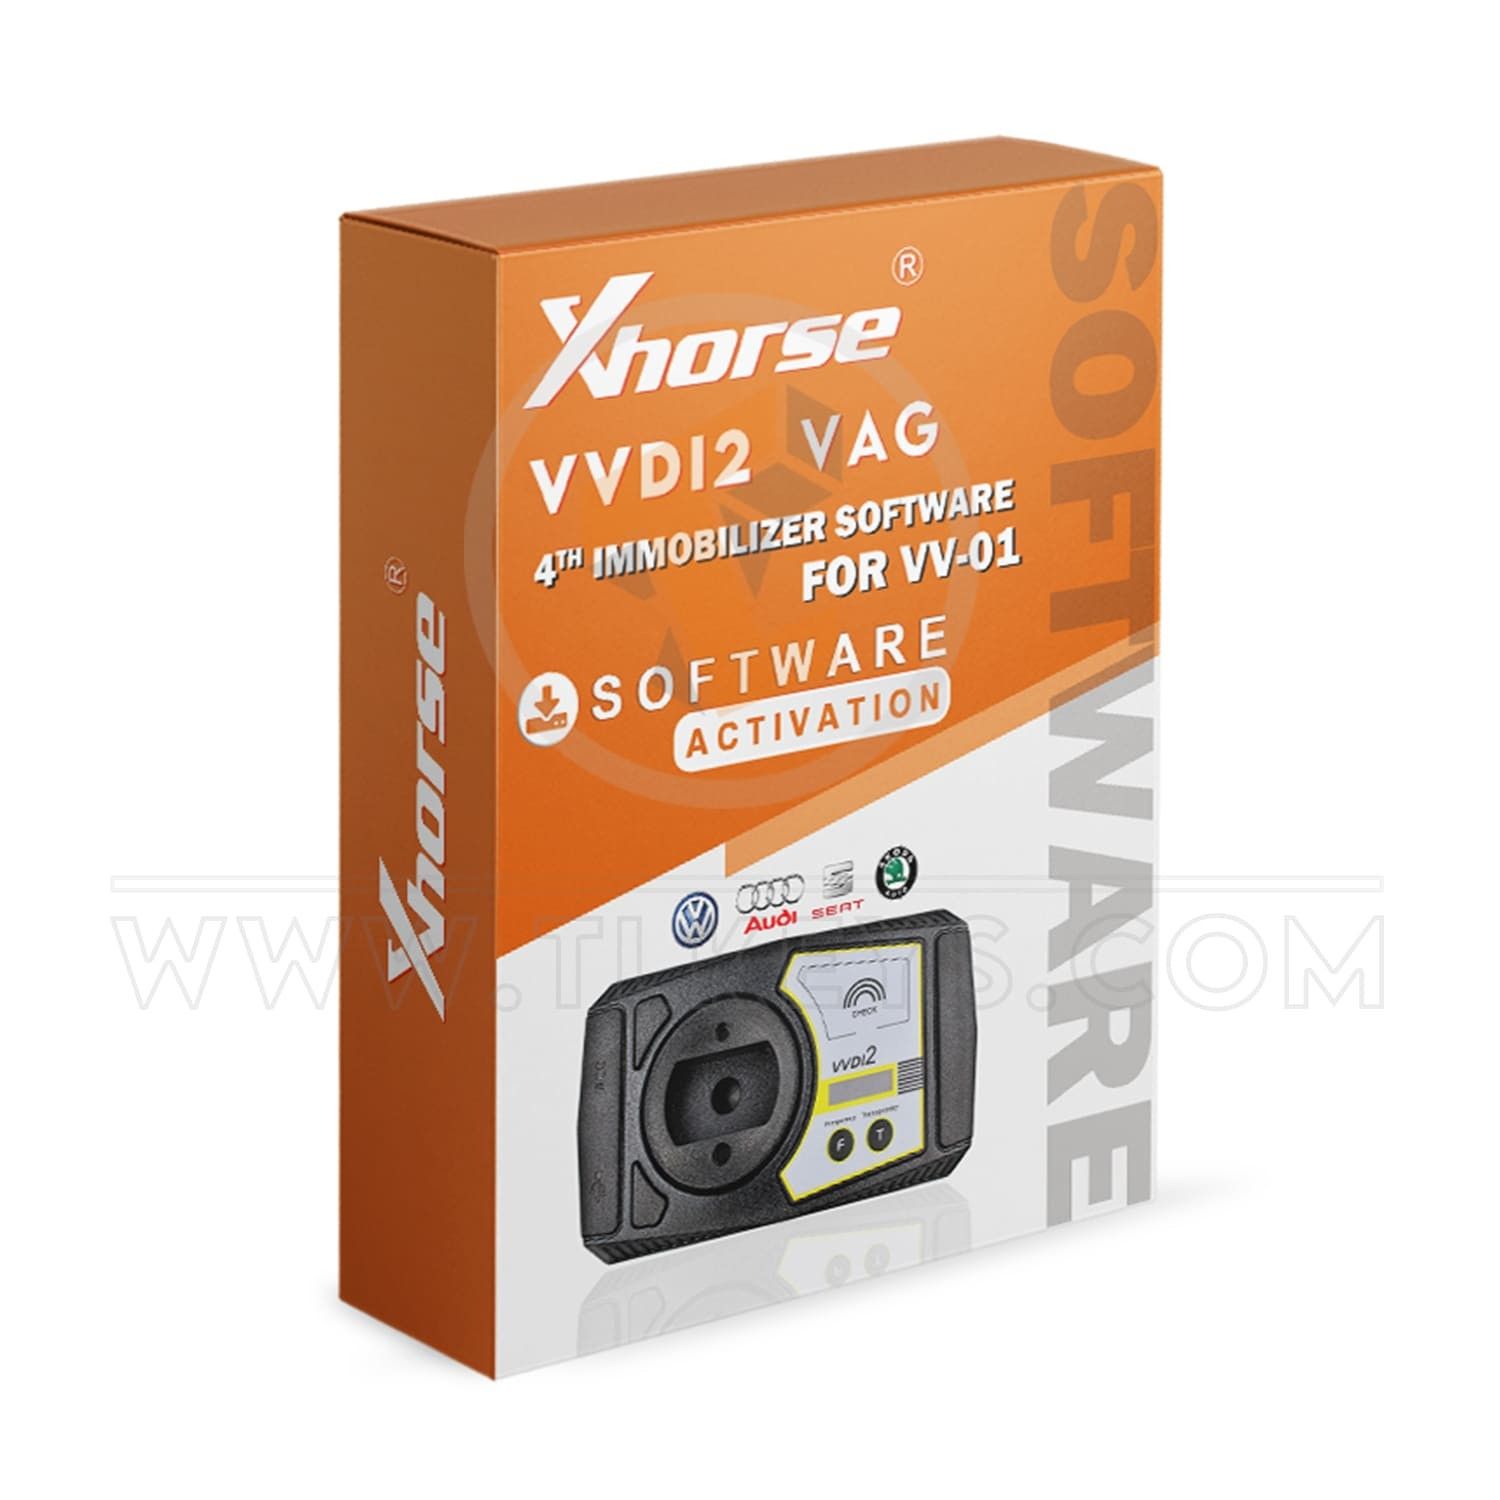 Xhorse VVDI2 VAG 4th Immobilizer Software (VV-01) software